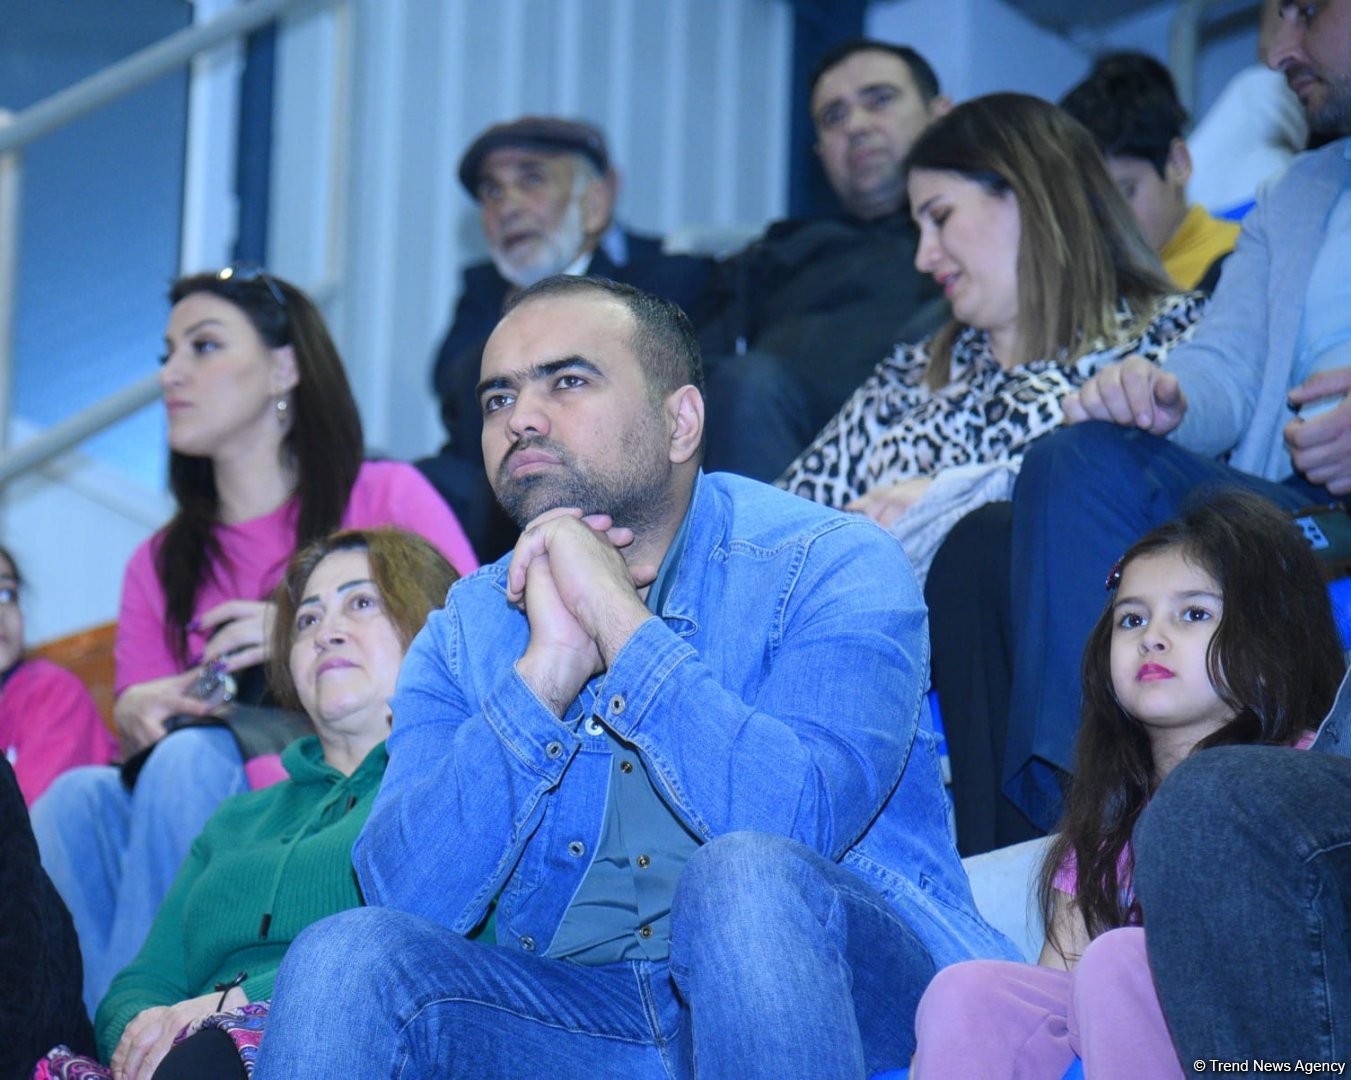 В Баку стартовал второй день соревнований Открытого первенства клуба "Оджаг Спорт" по художественной гимнастике (ФОТО)